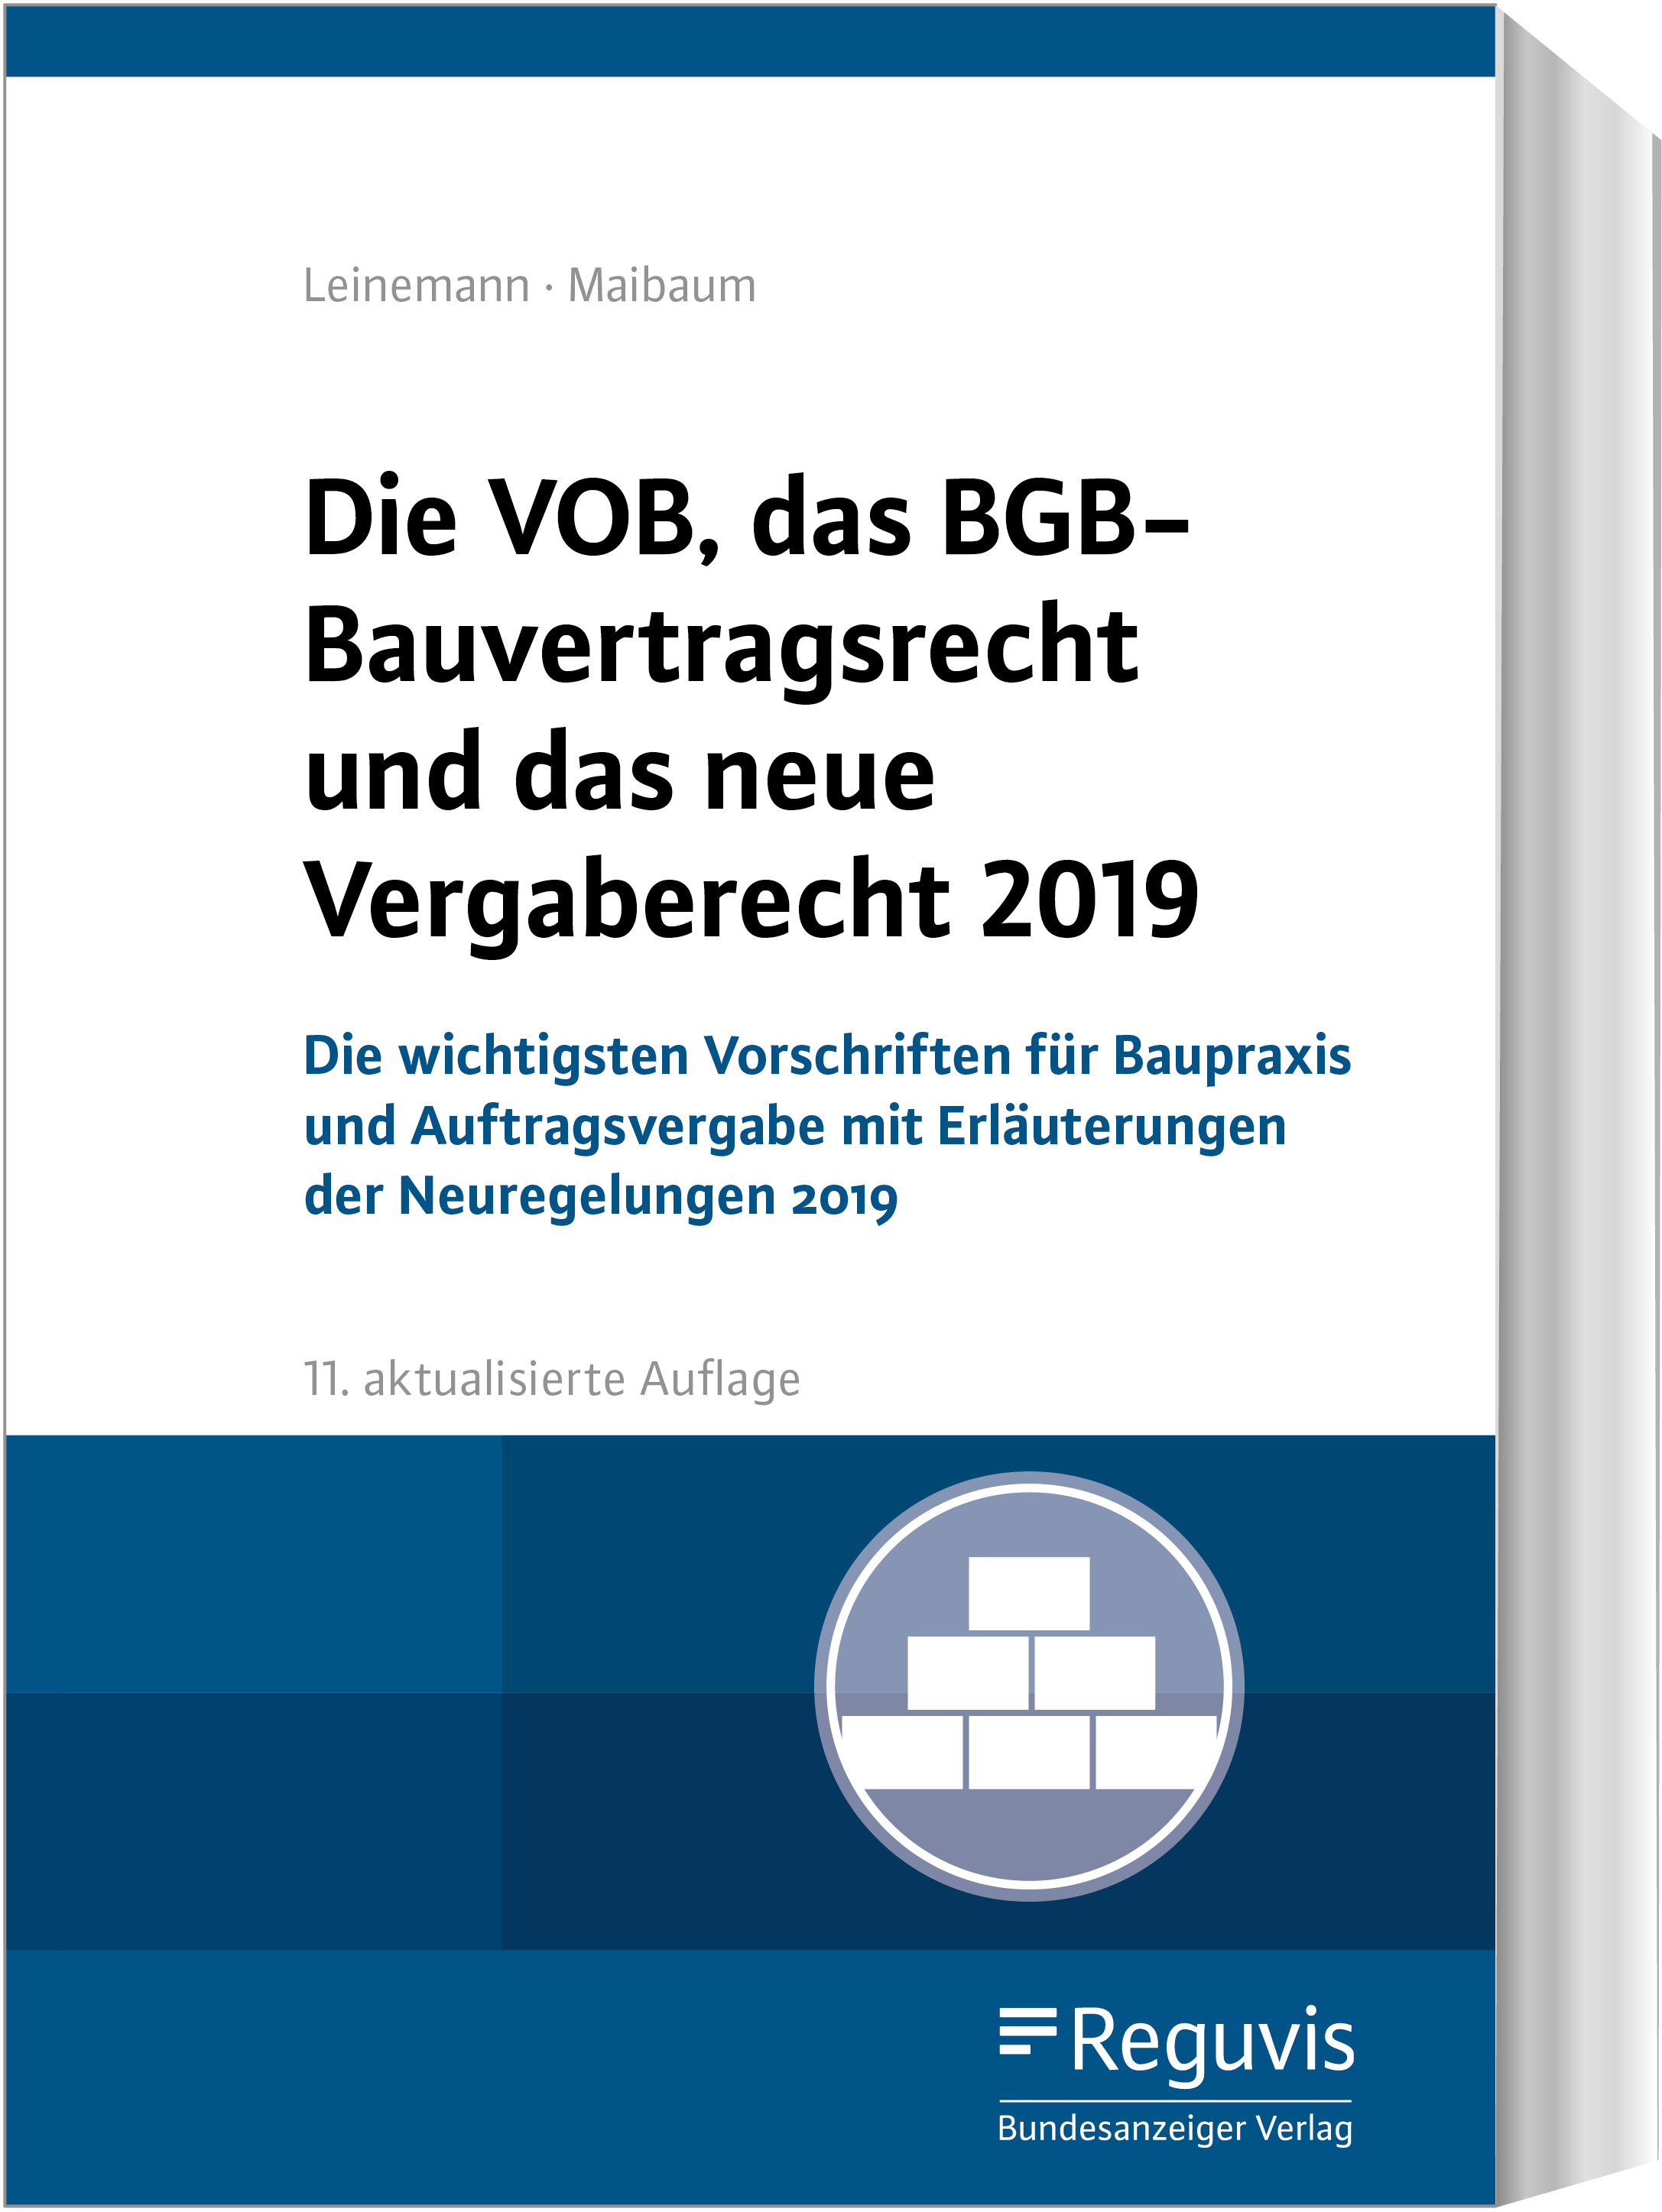 Die VOB, das BGB-Bauvertragsrecht und das neue Vergaberecht 2019